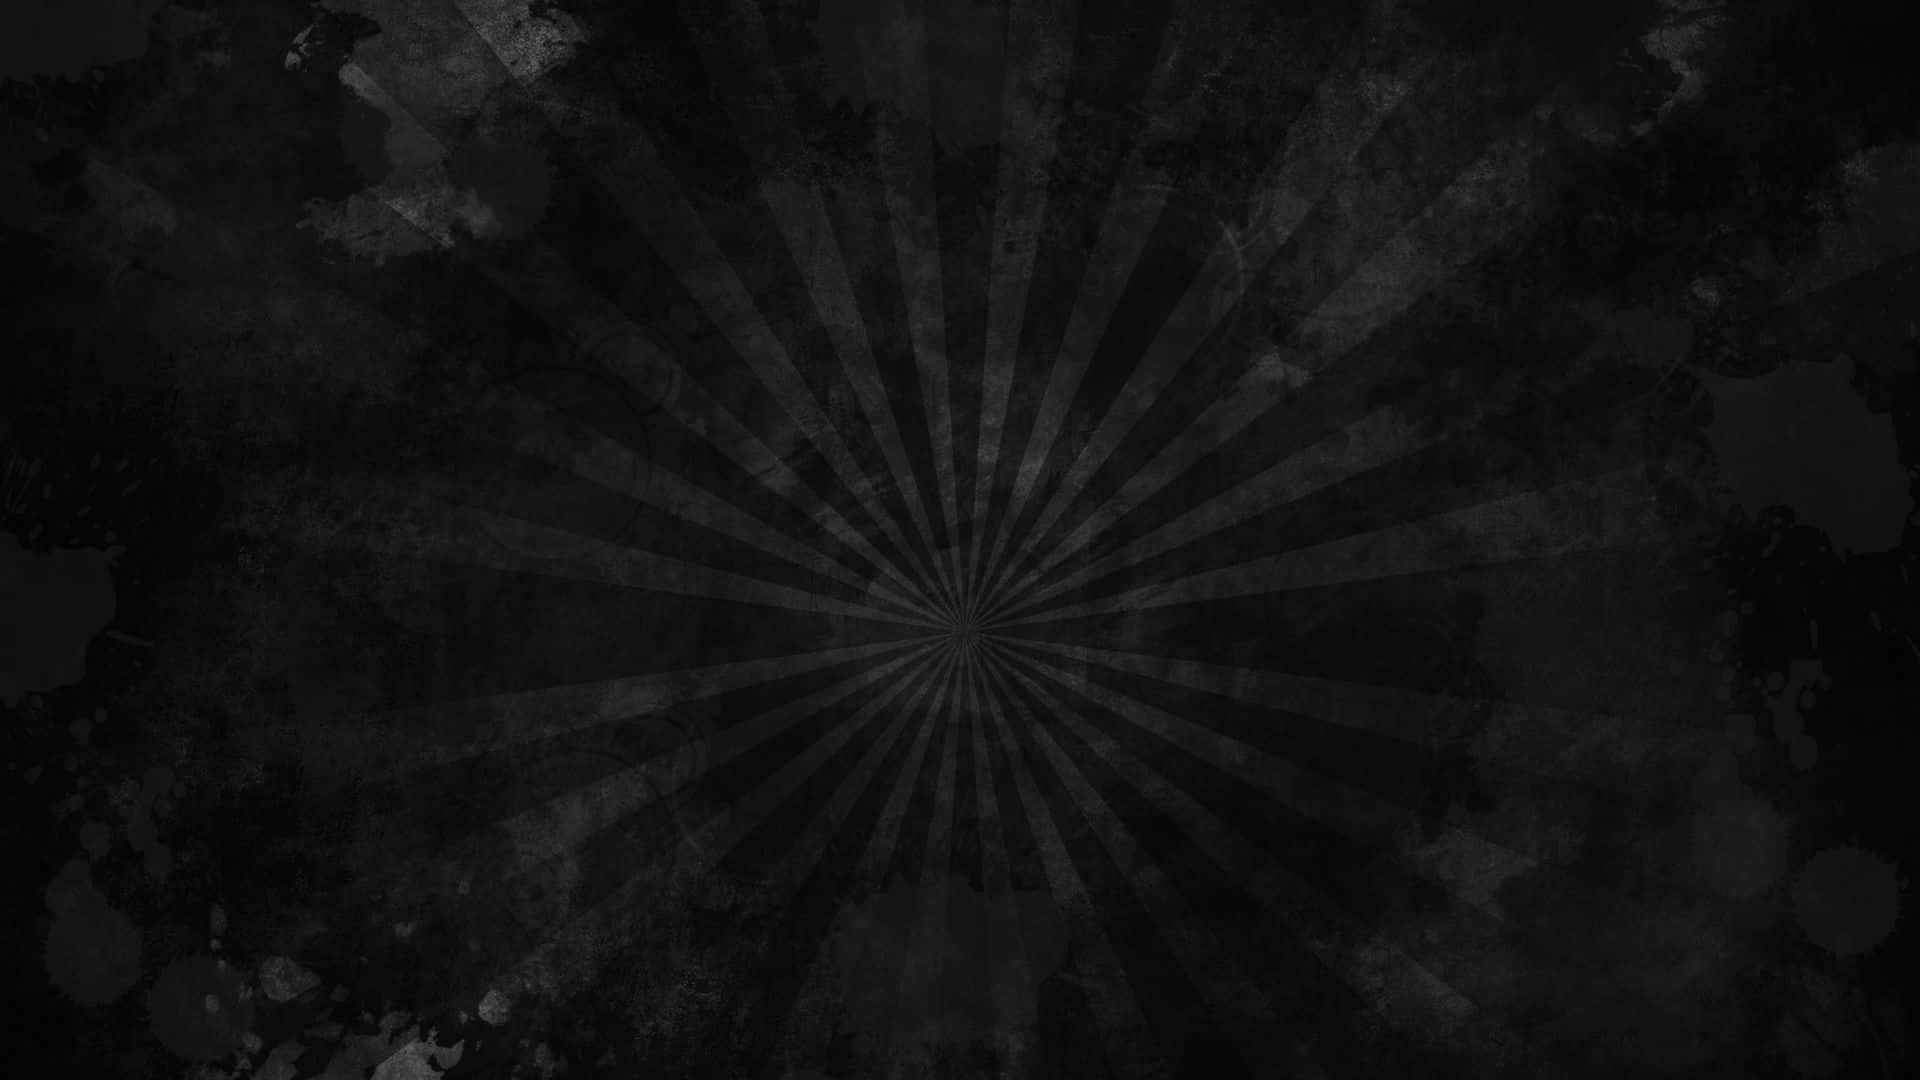 Dark and Distressed Grunge Background